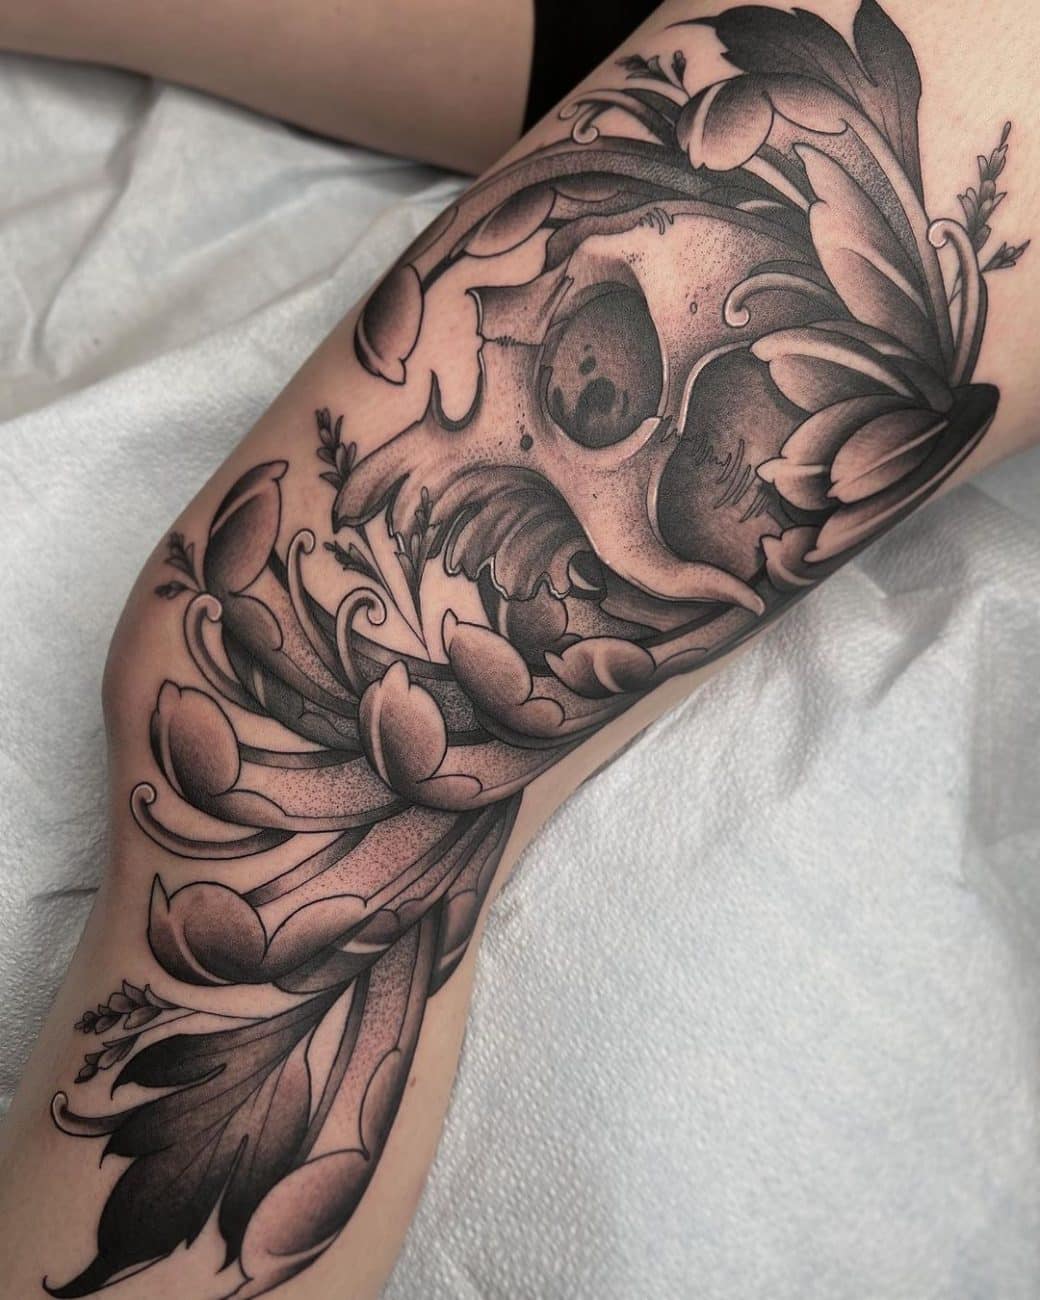 la-tattoo-danielle-skye-skull-leg-tattoo